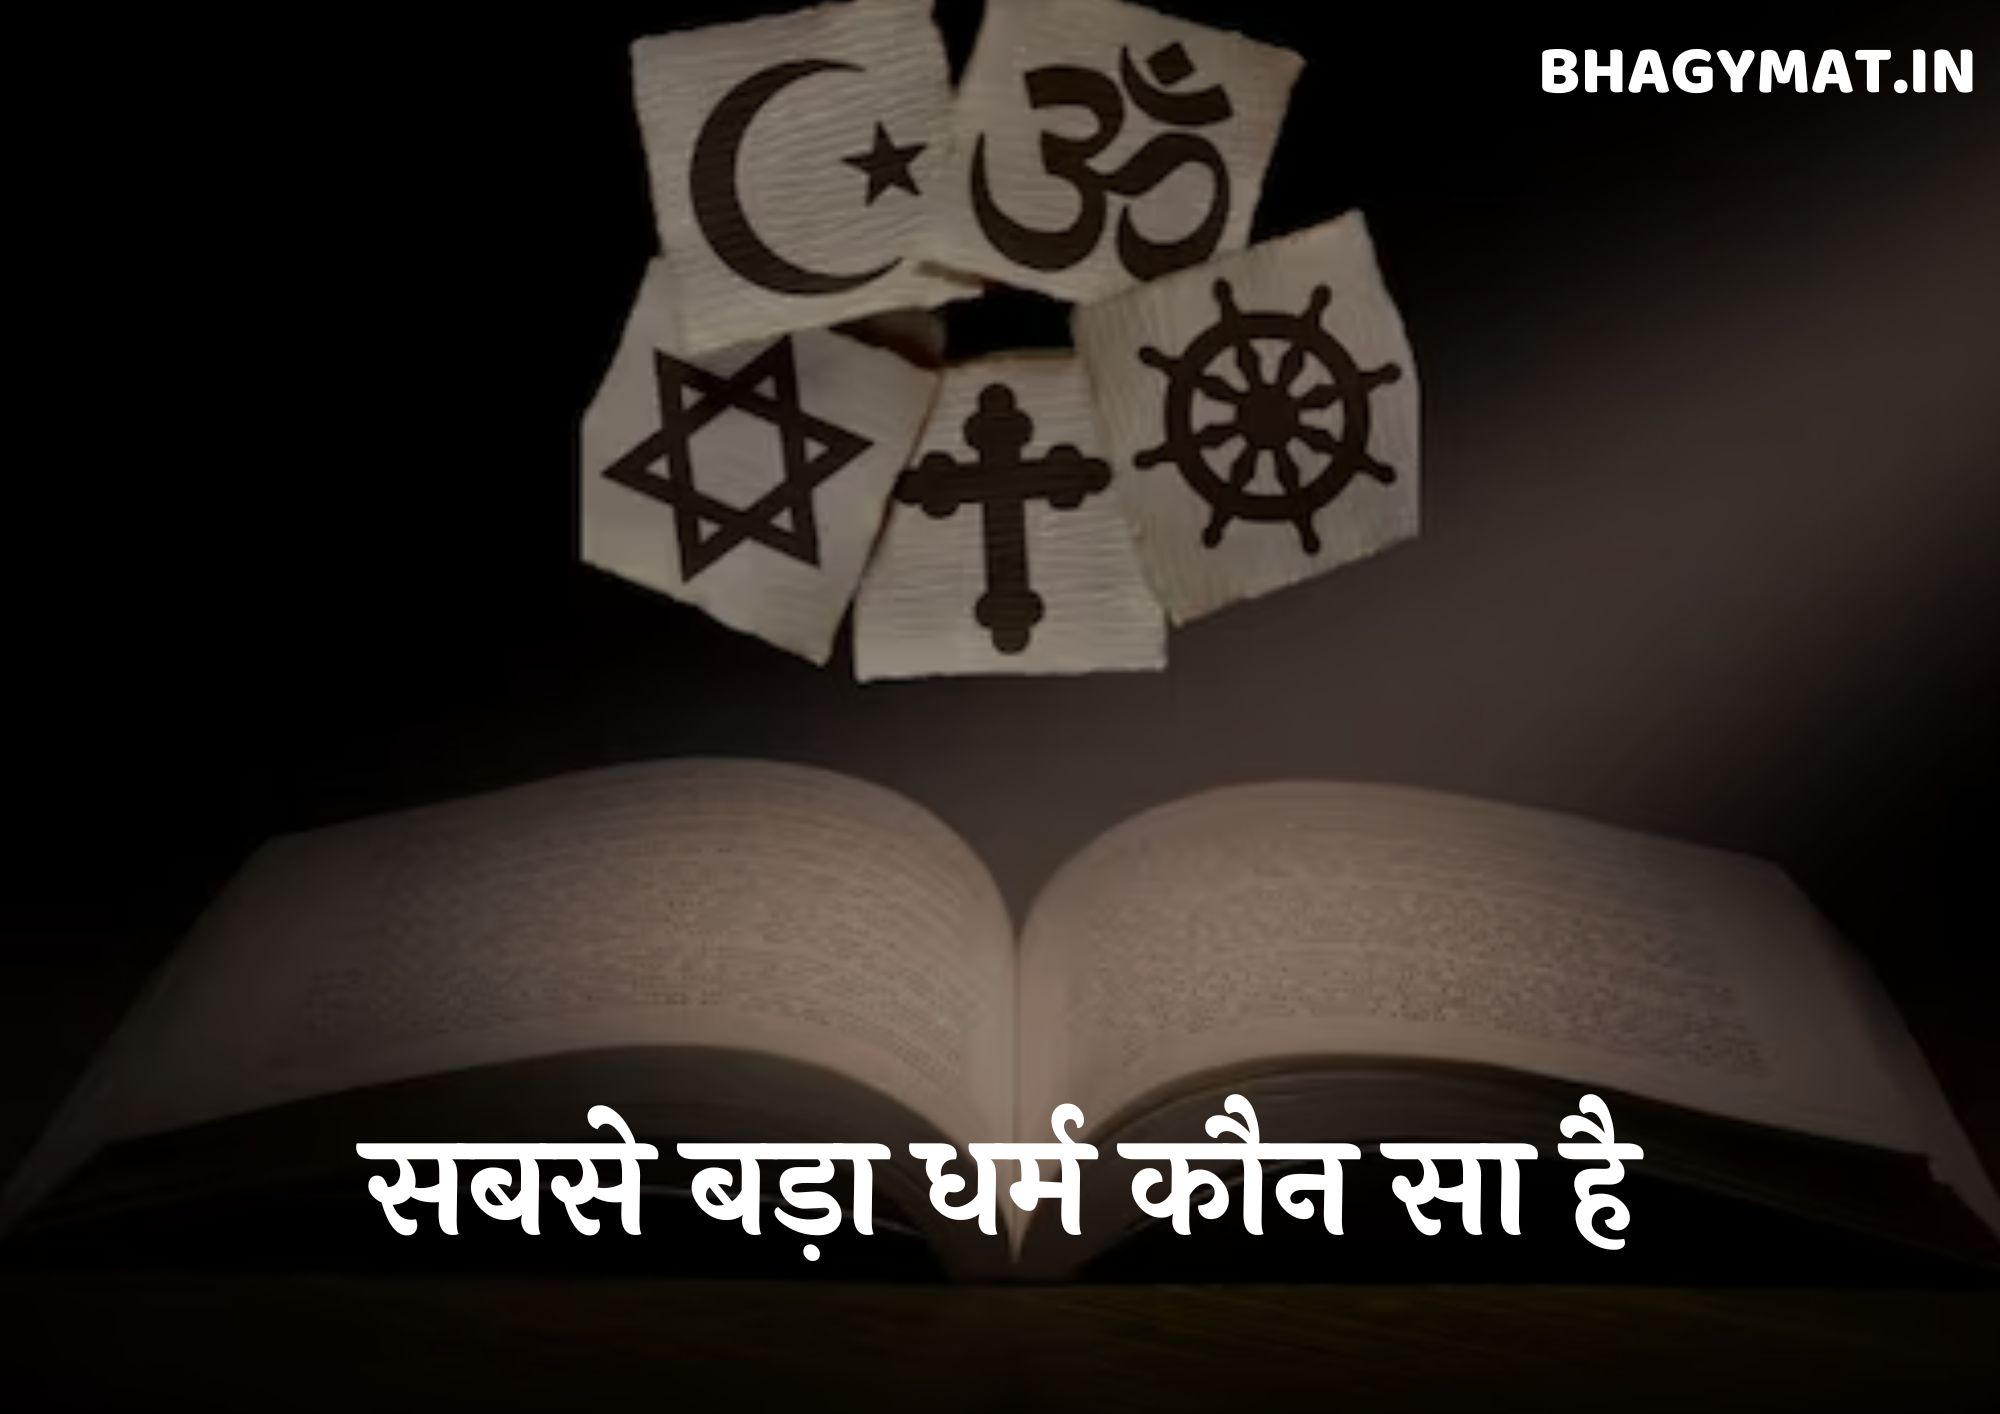 दुनिया का सबसे बड़ा धर्म कौन सा है, भारत में सबसे बड़ा धर्म कौन सा है?